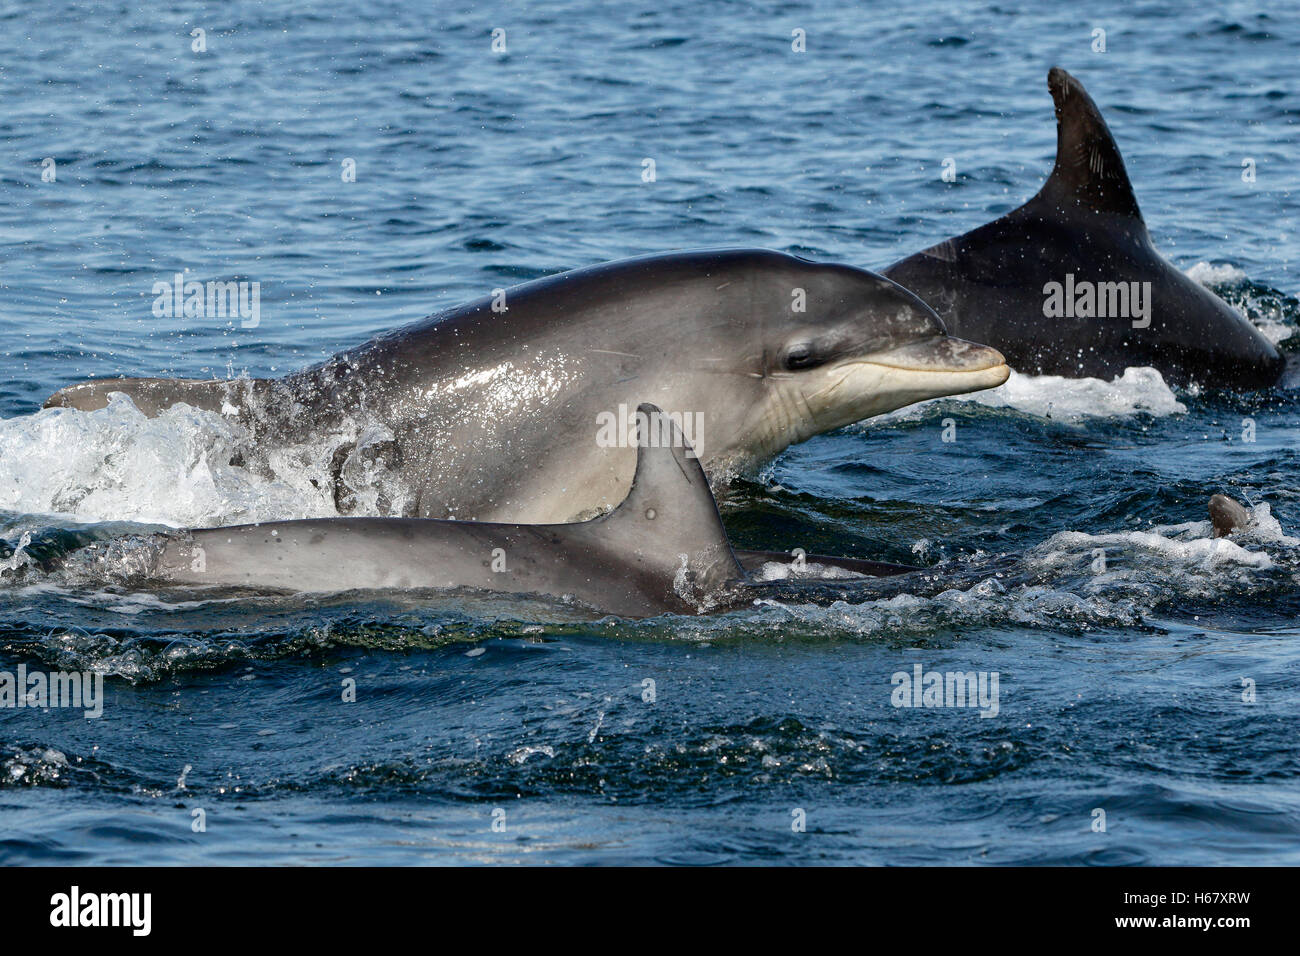 A Bottlenose dolphin calf surfacing, Moray Firth, Scotland Stock Photo